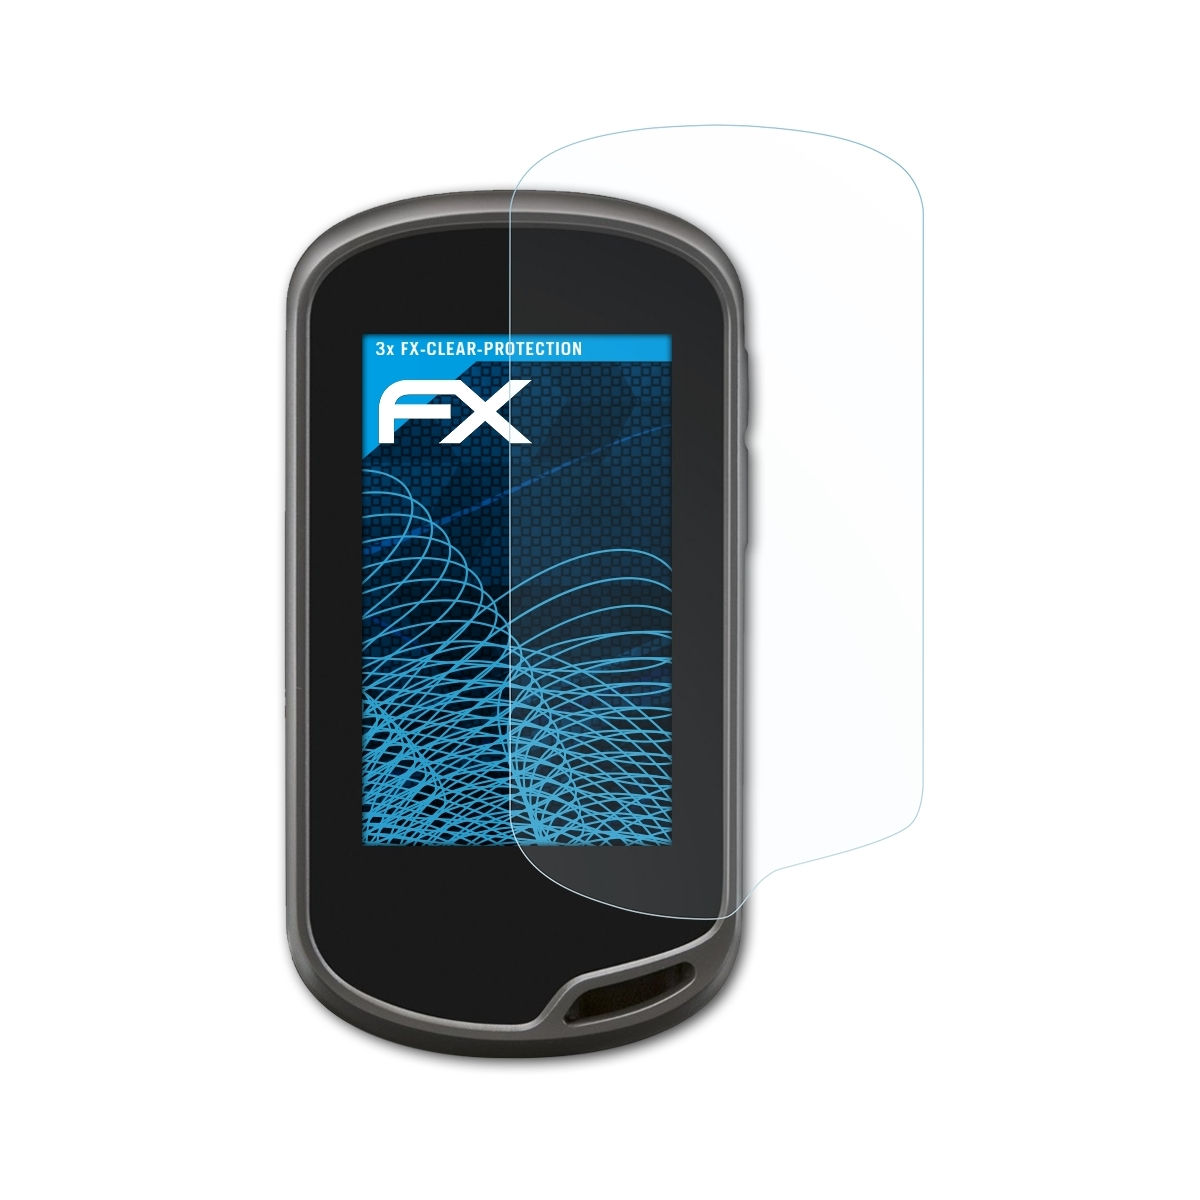 FX-Clear 3x Garmin Displayschutz(für Oregon 650) ATFOLIX